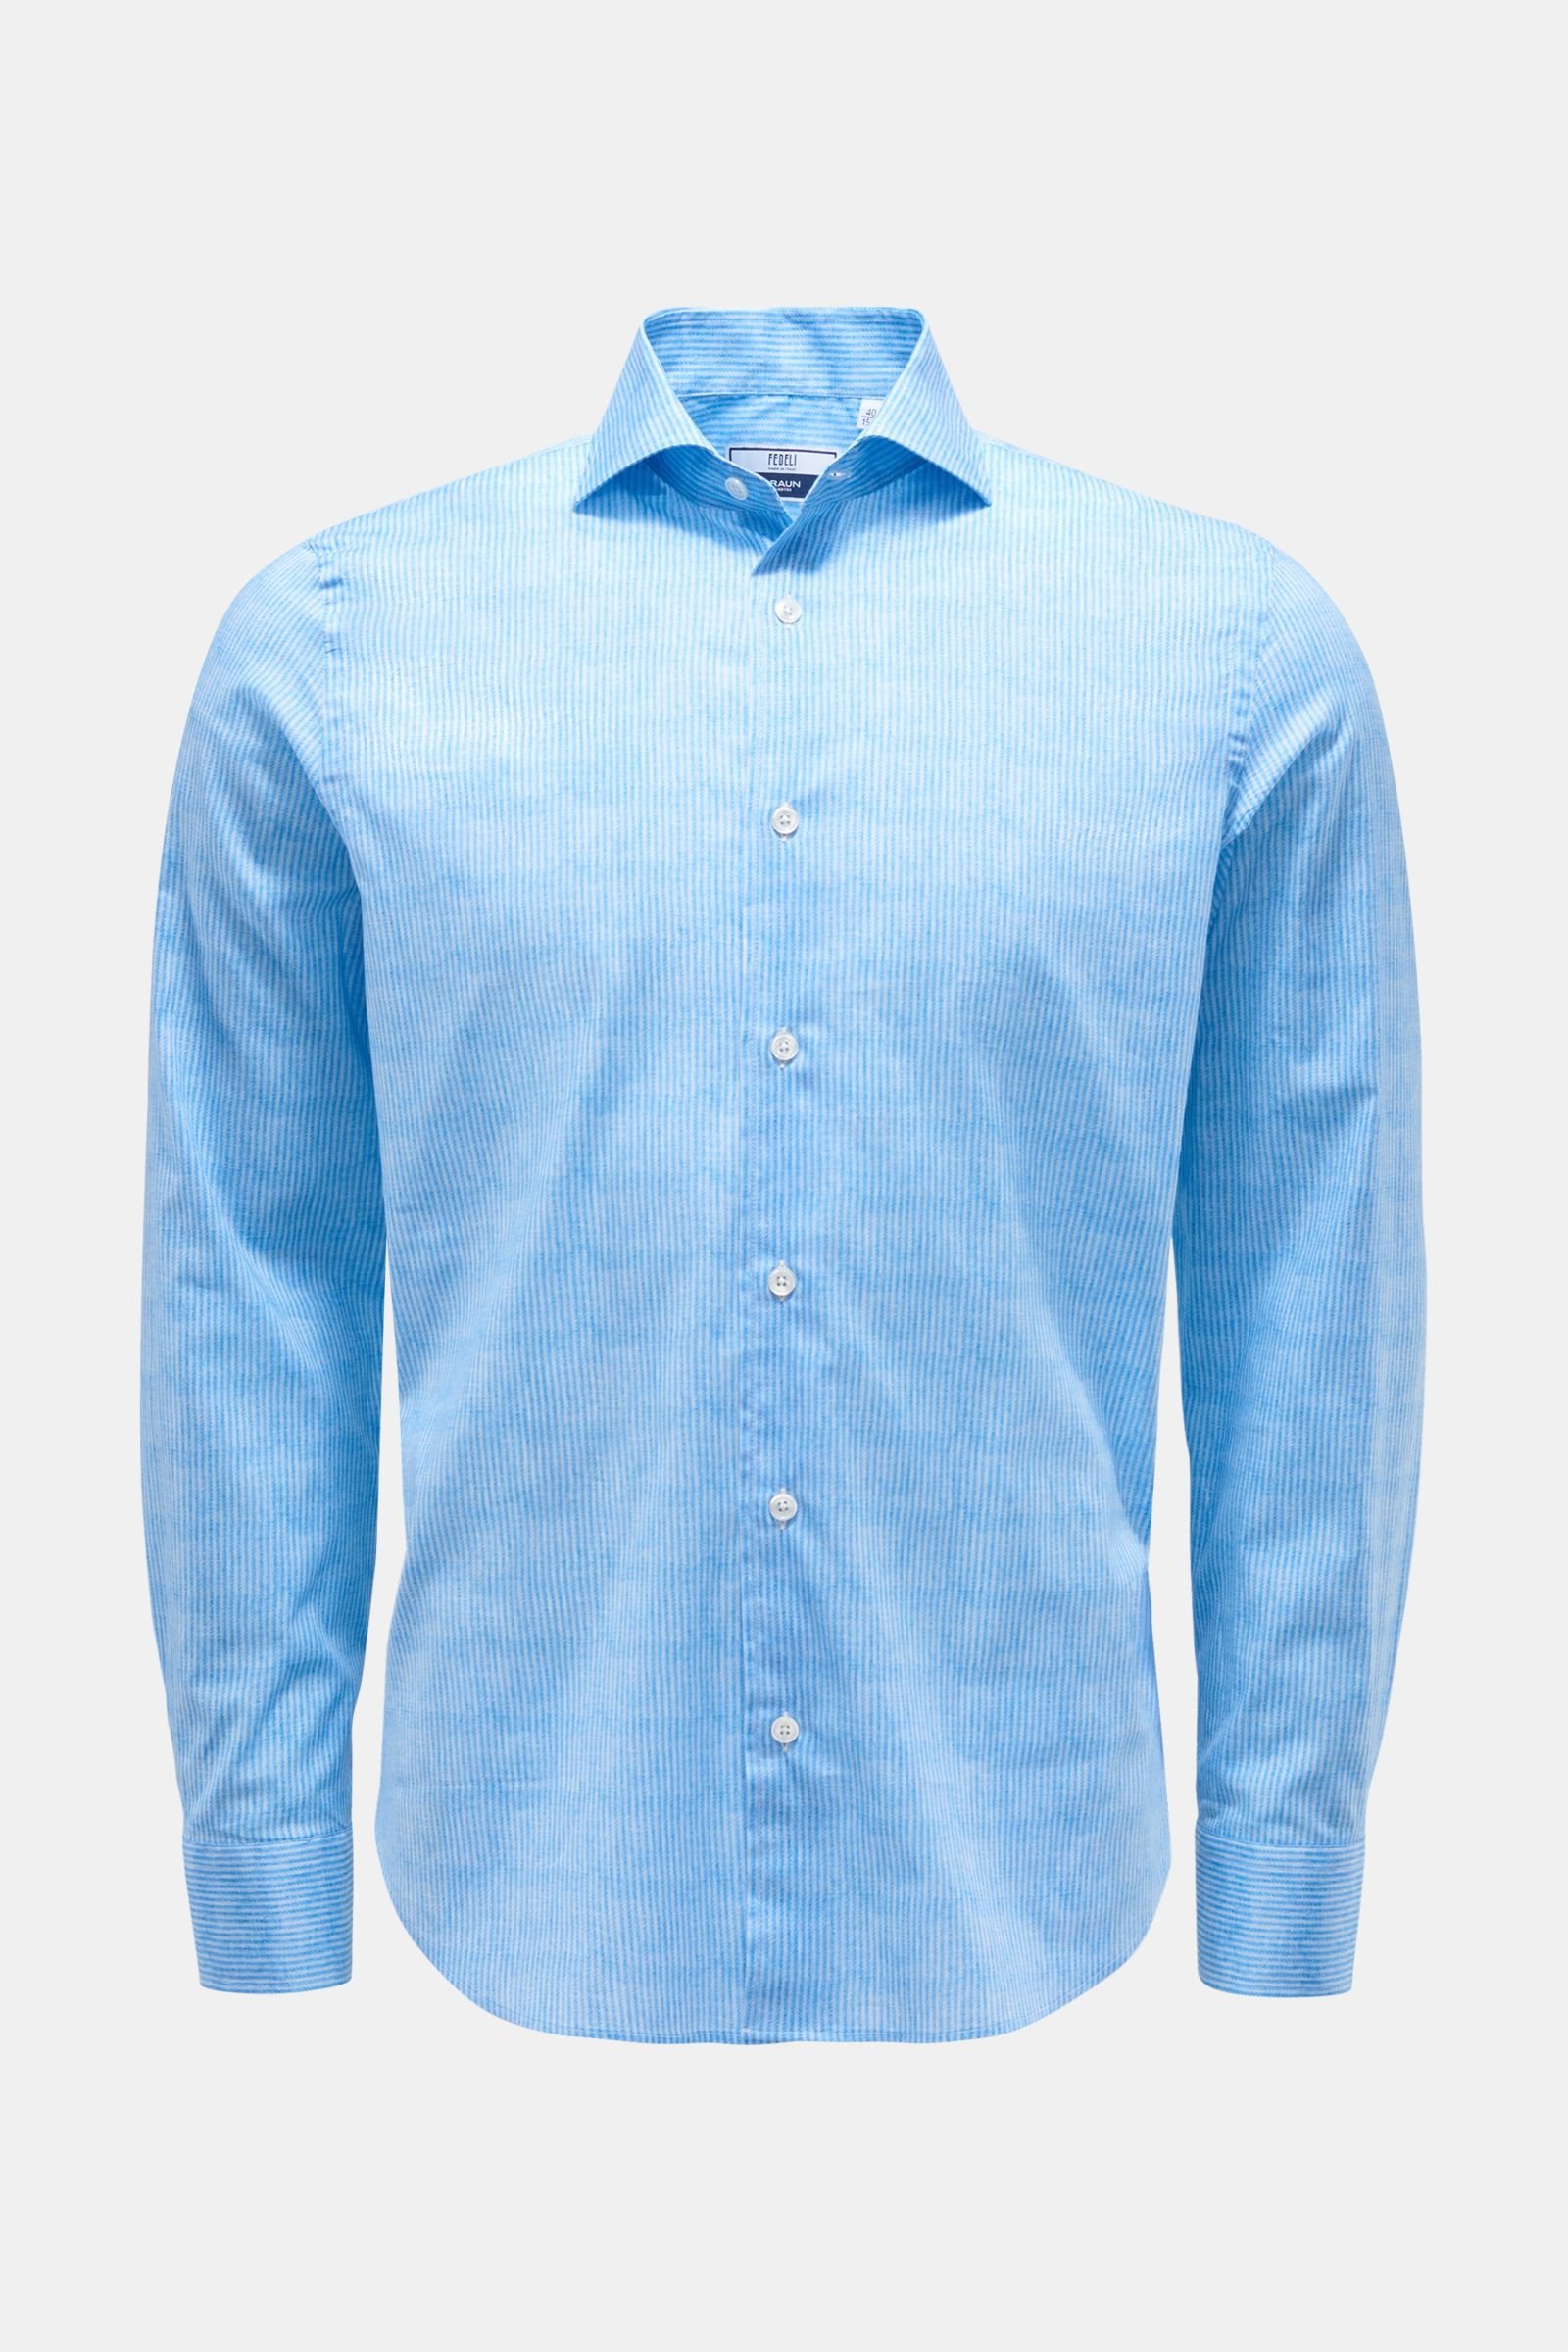 Casual shirt 'Sean' shark collar pastel blue striped